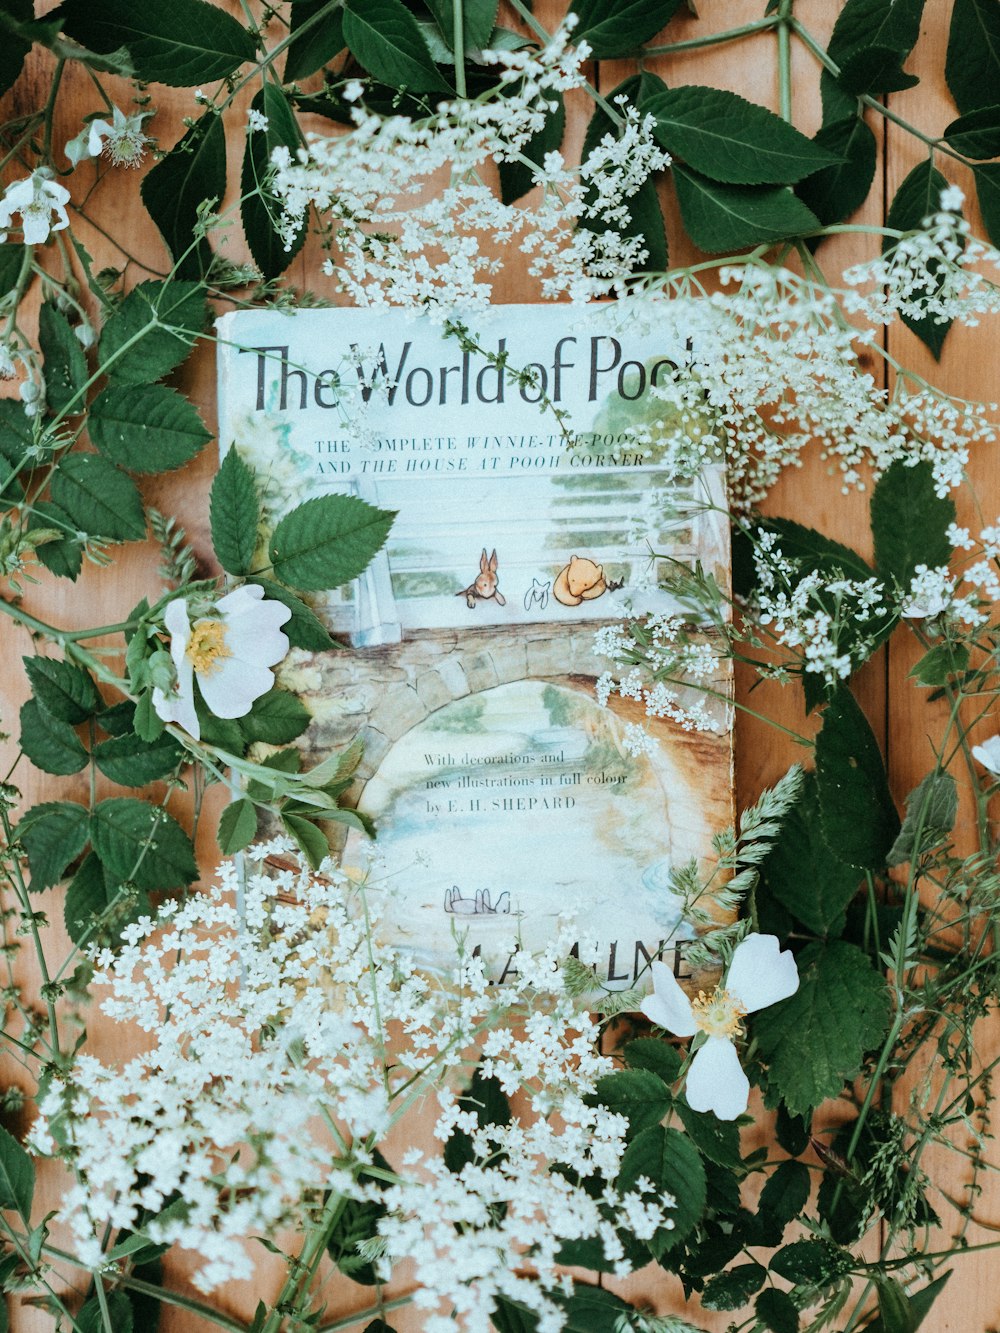 white petaled flower lot on book